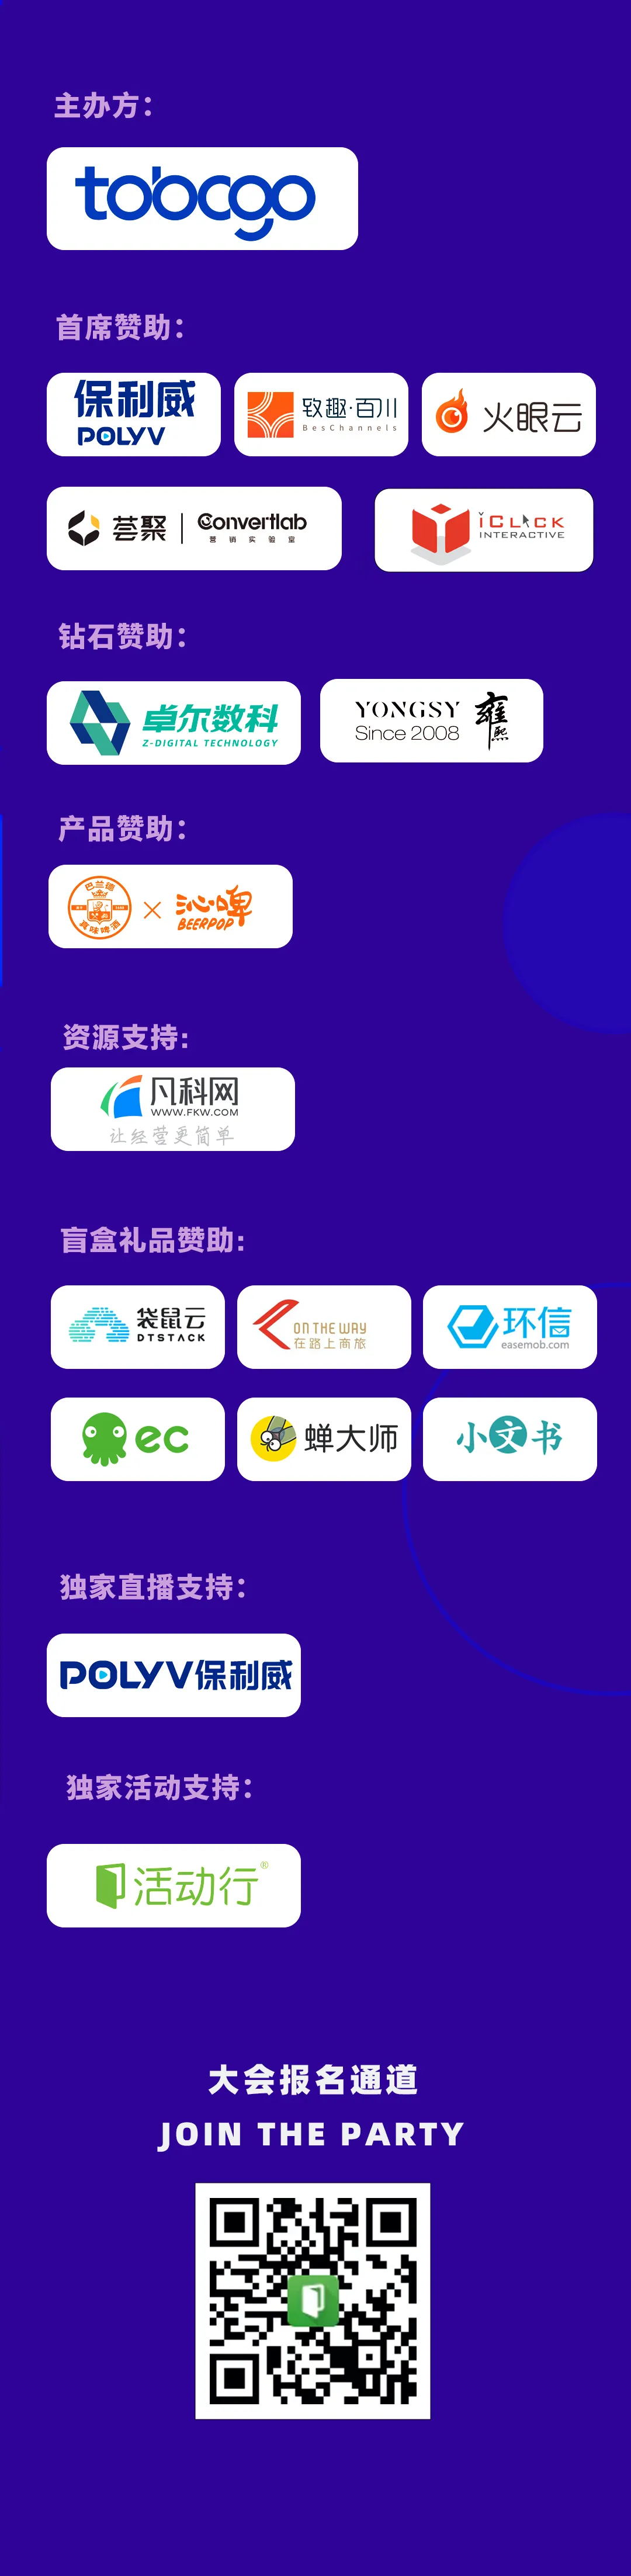 5_看图王.web.jpg